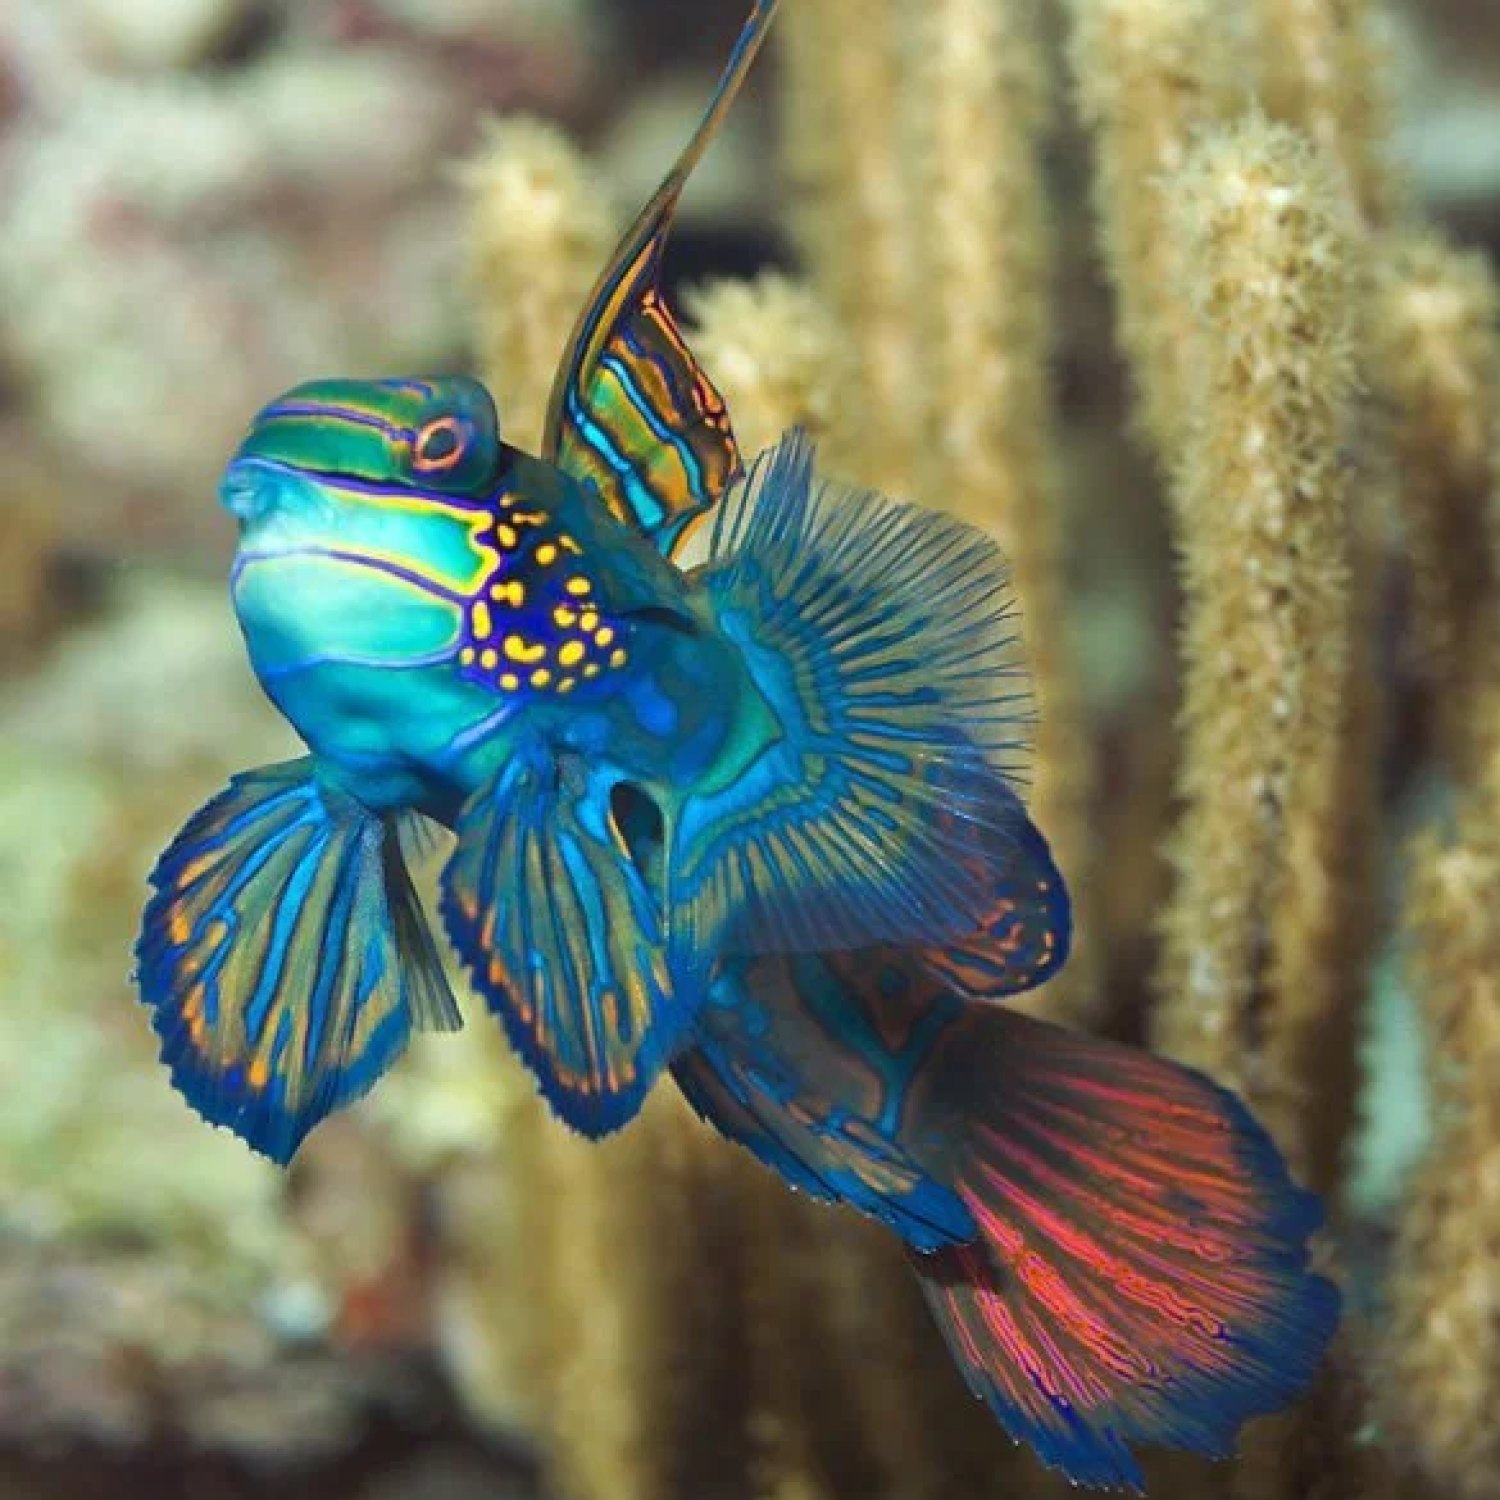 Hewan Menantang di Lautan Dalam: Oilfish, Sang Ruvettus Pretiosus